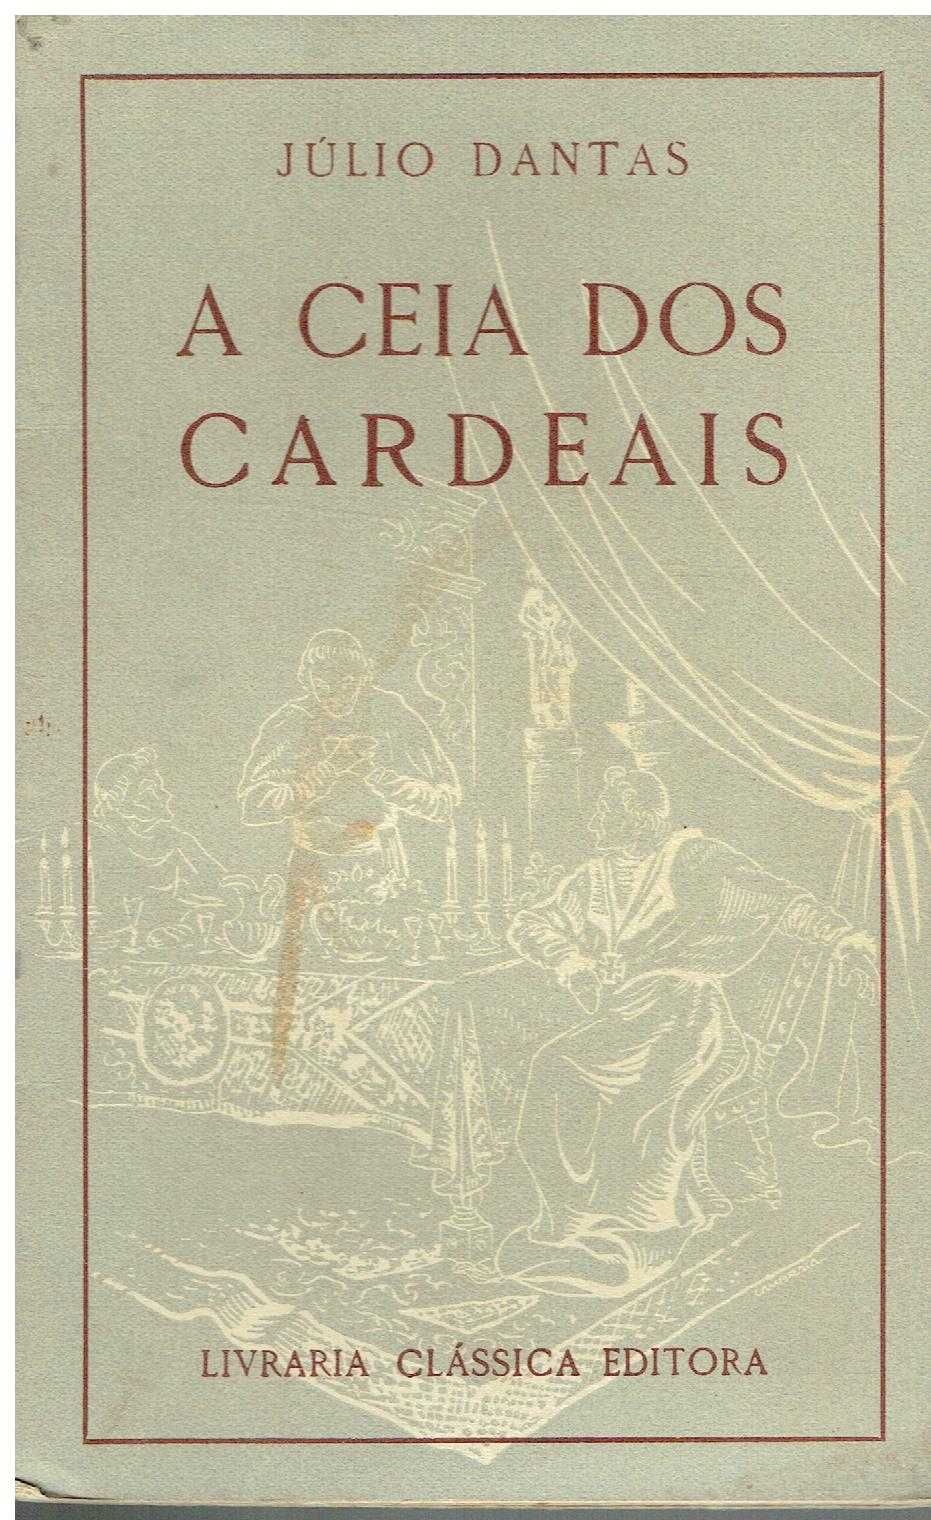 250 -Livros de Júlio Dantas 3